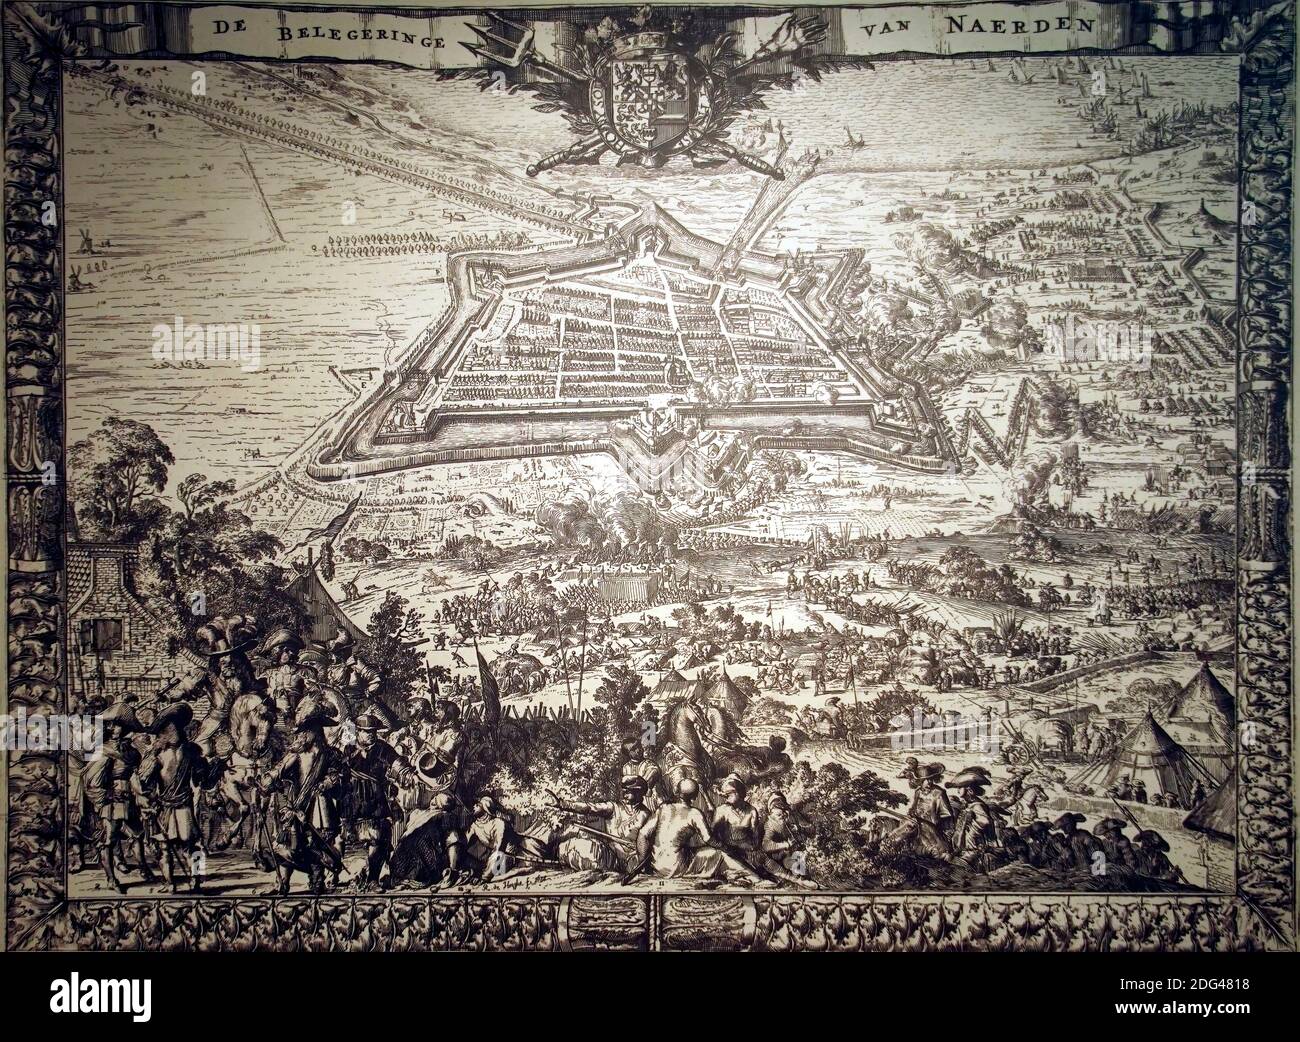 NAARDEN, PAESI BASSI - DEC 13, 2018 - Mappa d'epoca della città fortificata di Naarden, Paesi Bassi Foto Stock